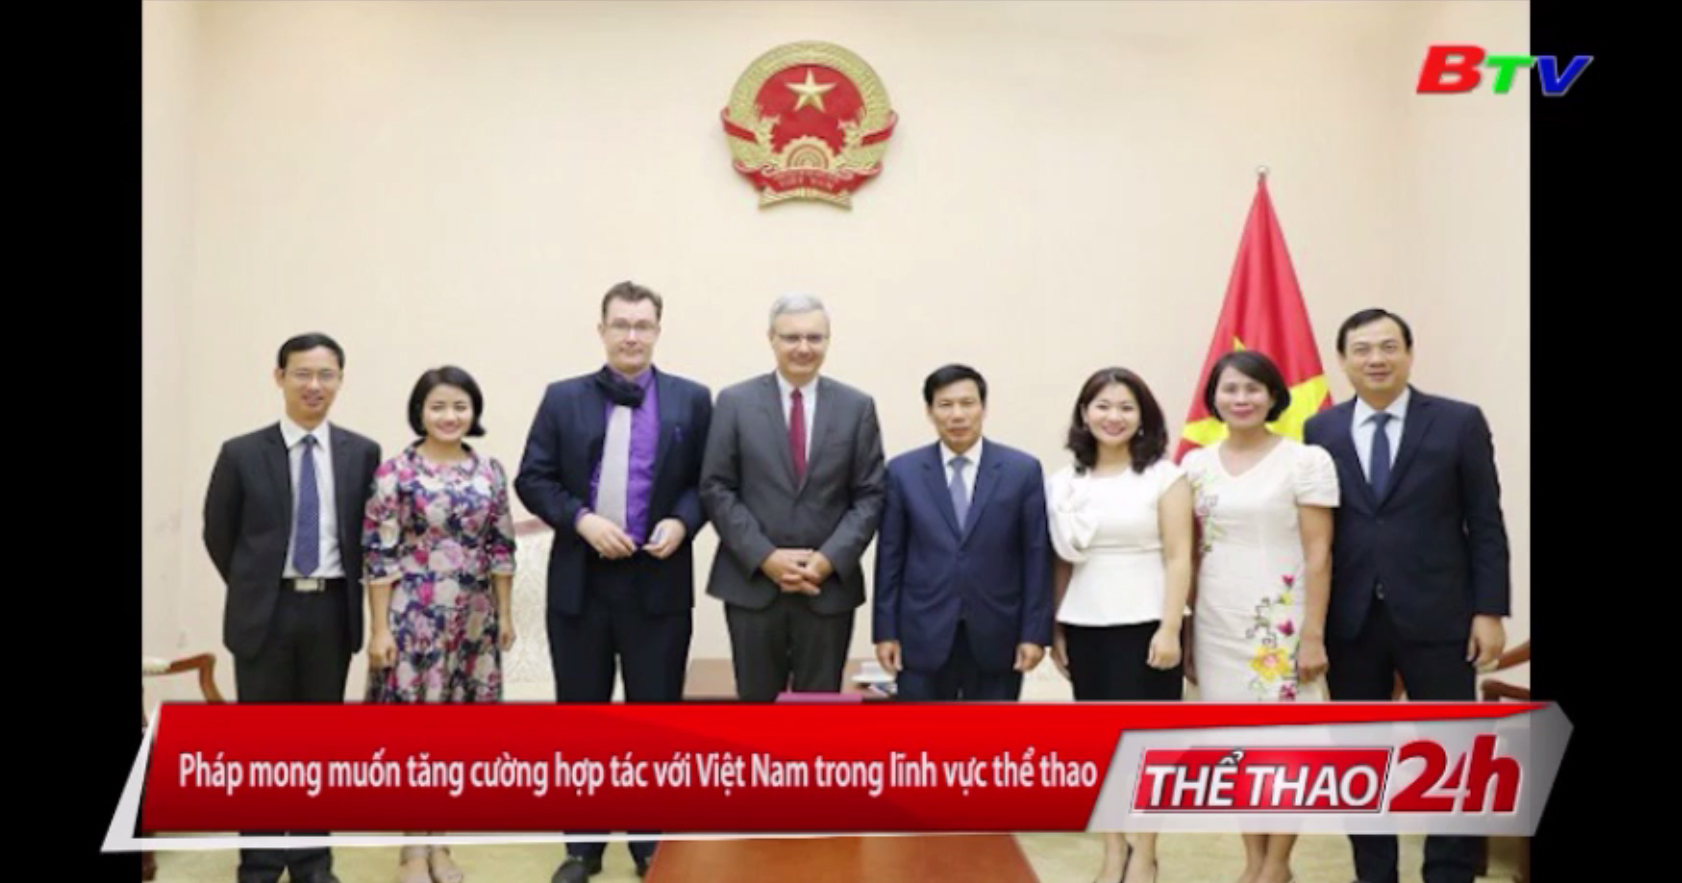 Pháp mong muốn tăng cường hợp tác với Việt Nam trong lĩnh vực thể thao